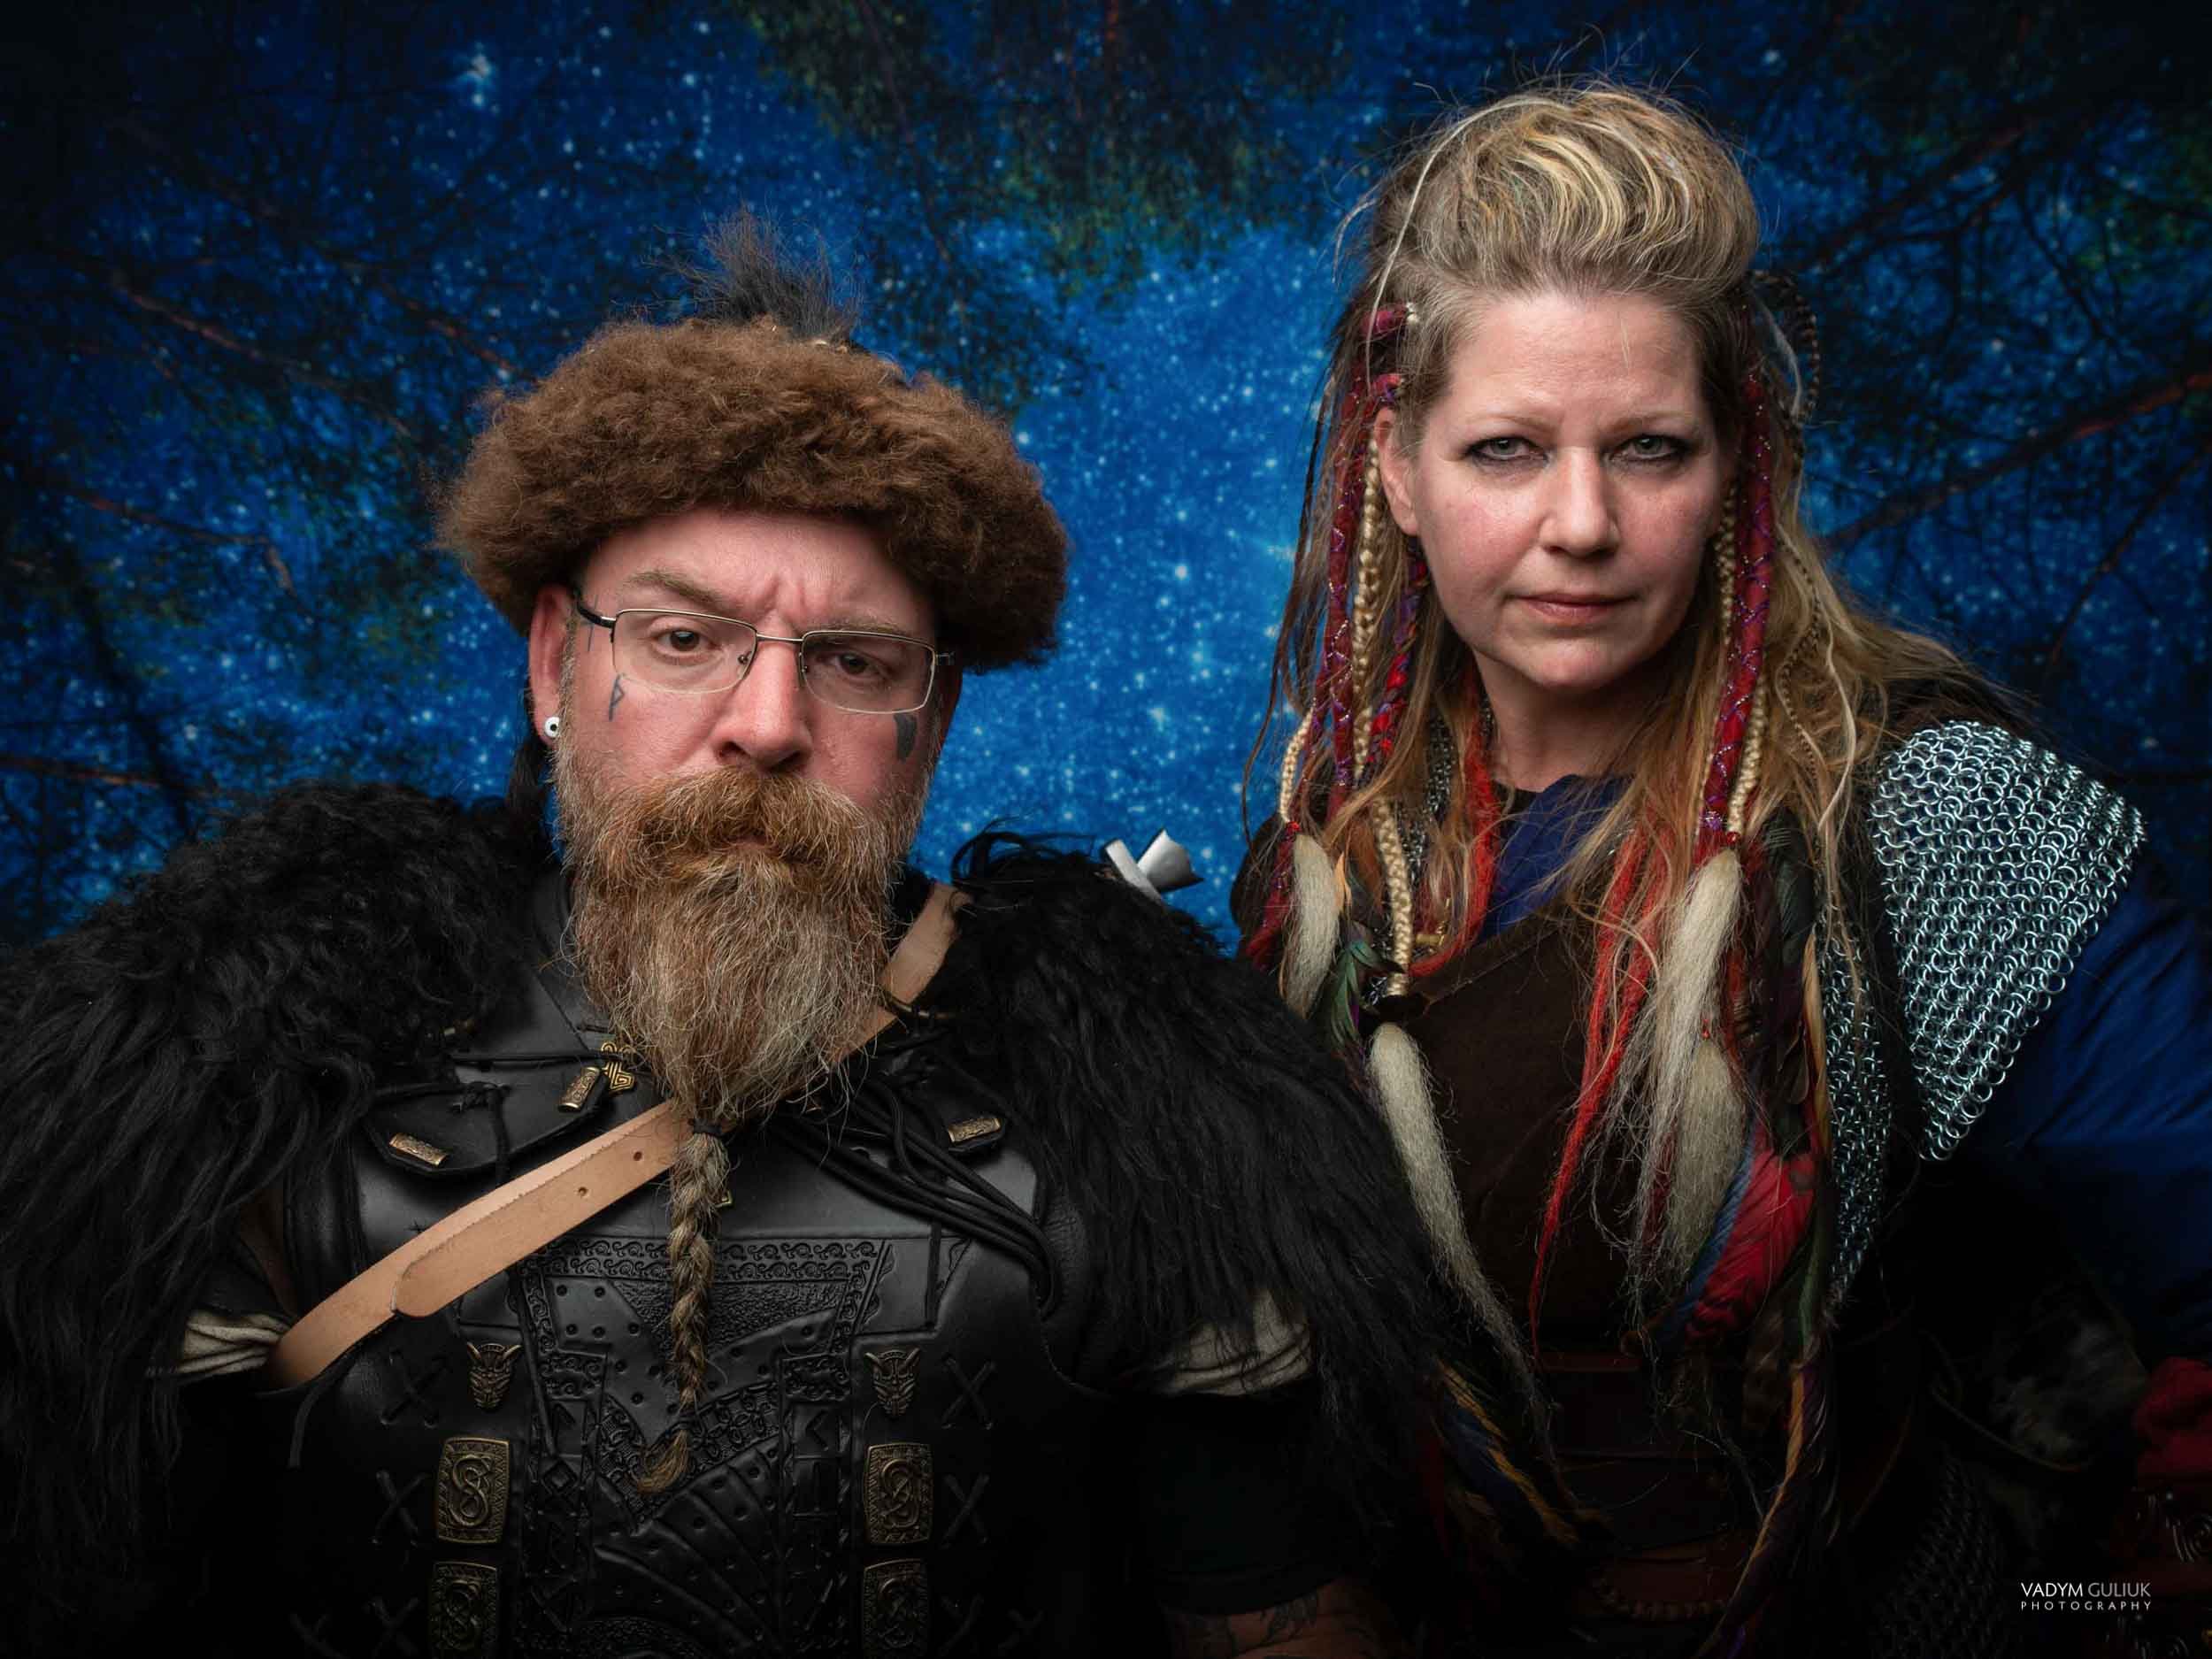 The Vikings Portraits by Vadym 2022-49.jpg